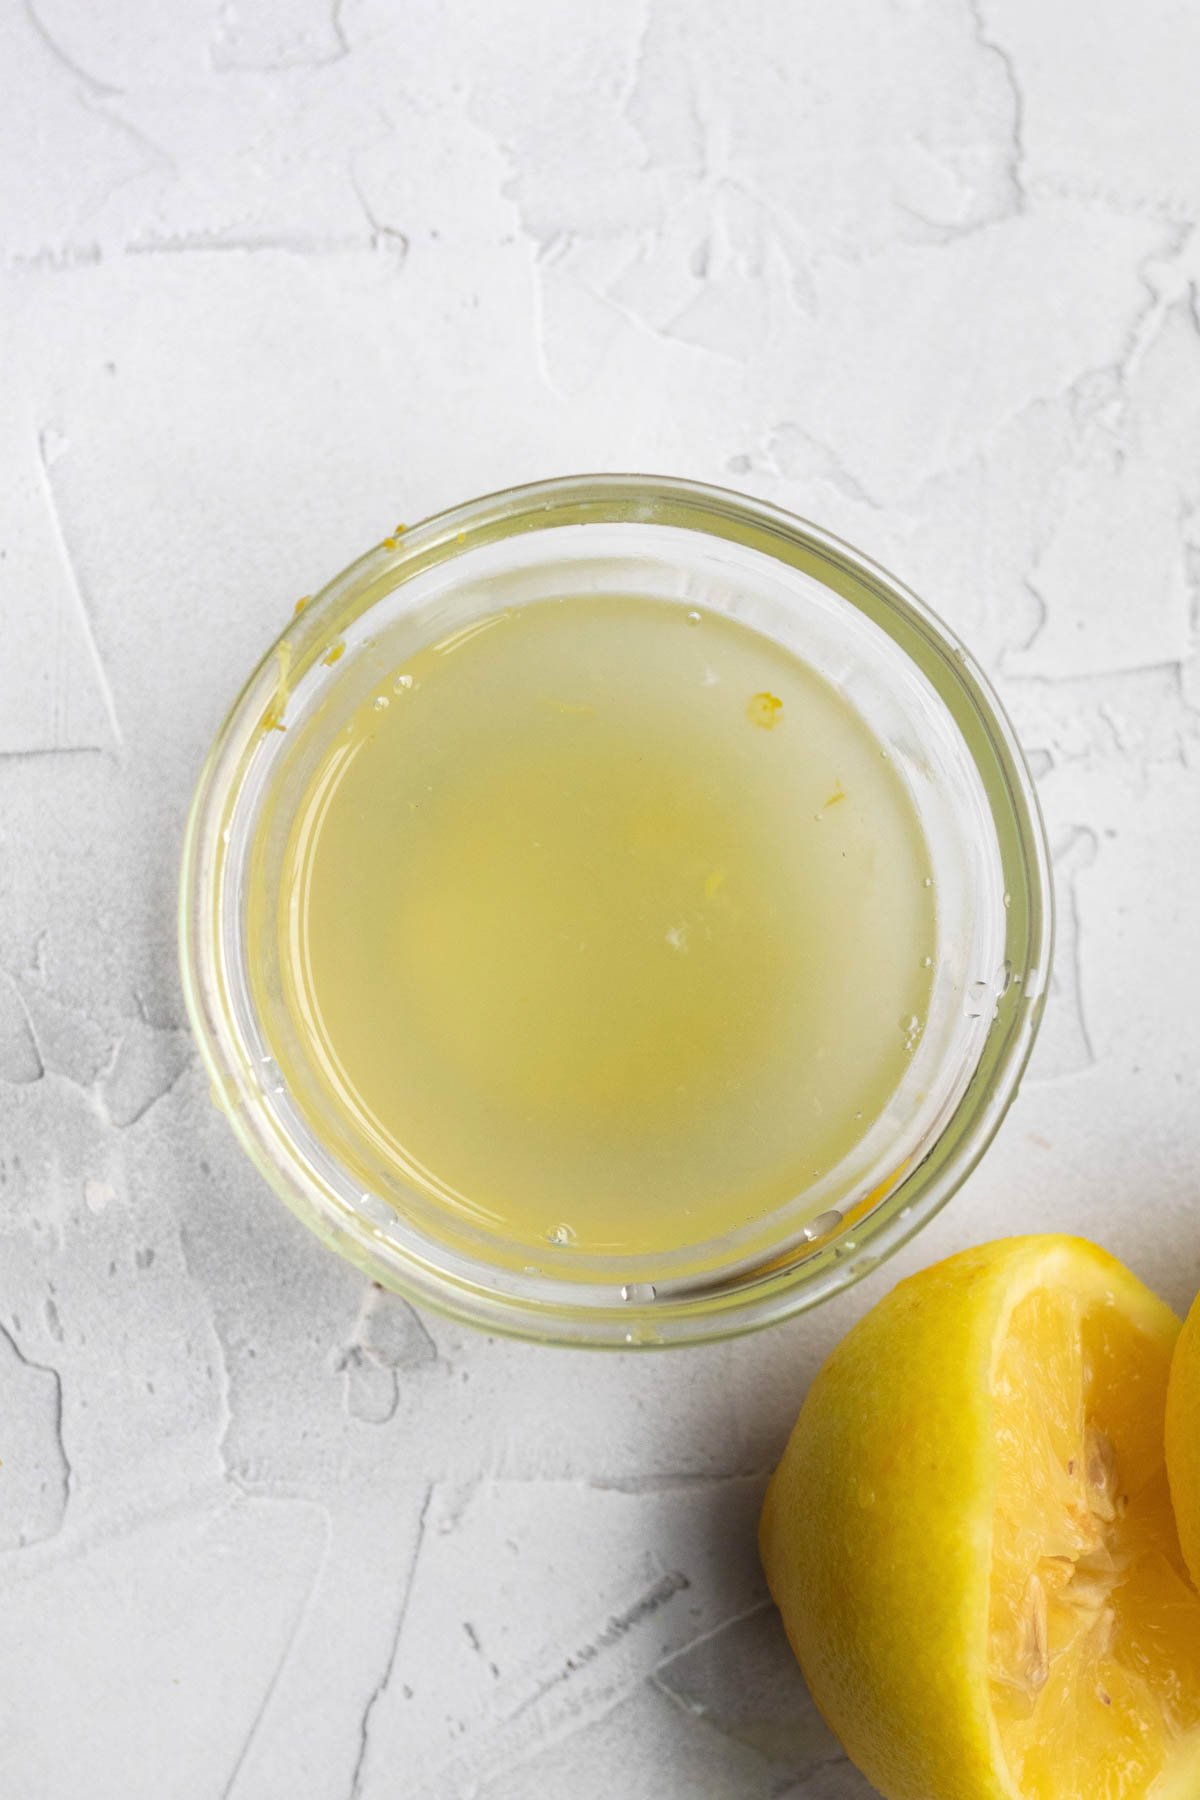 A bowl of lemon juice.